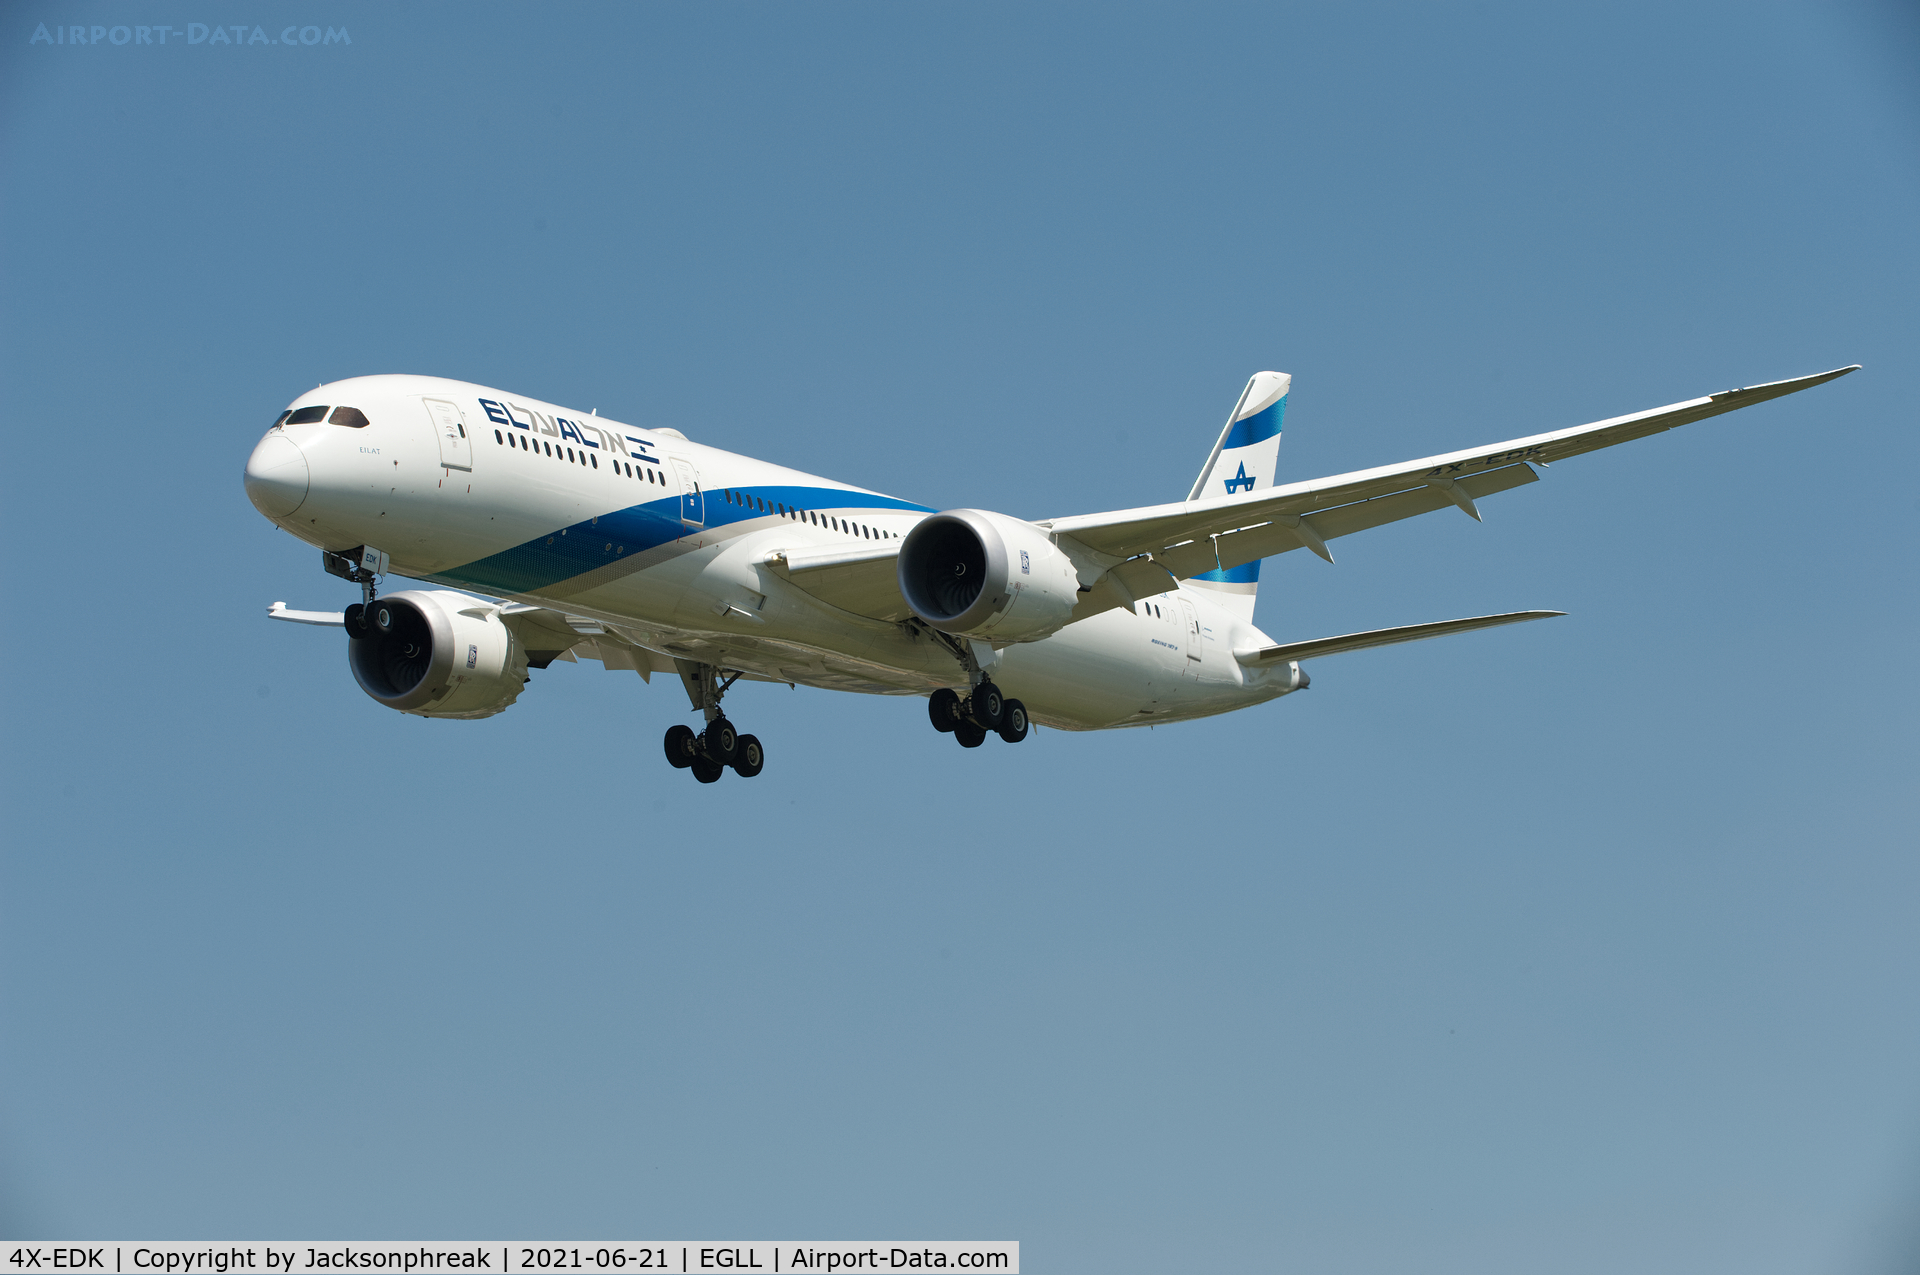 4X-EDK, 2019 Boeing 787-9 Dreamliner Dreamliner C/N 63395, Landing at London Heathrow Airport